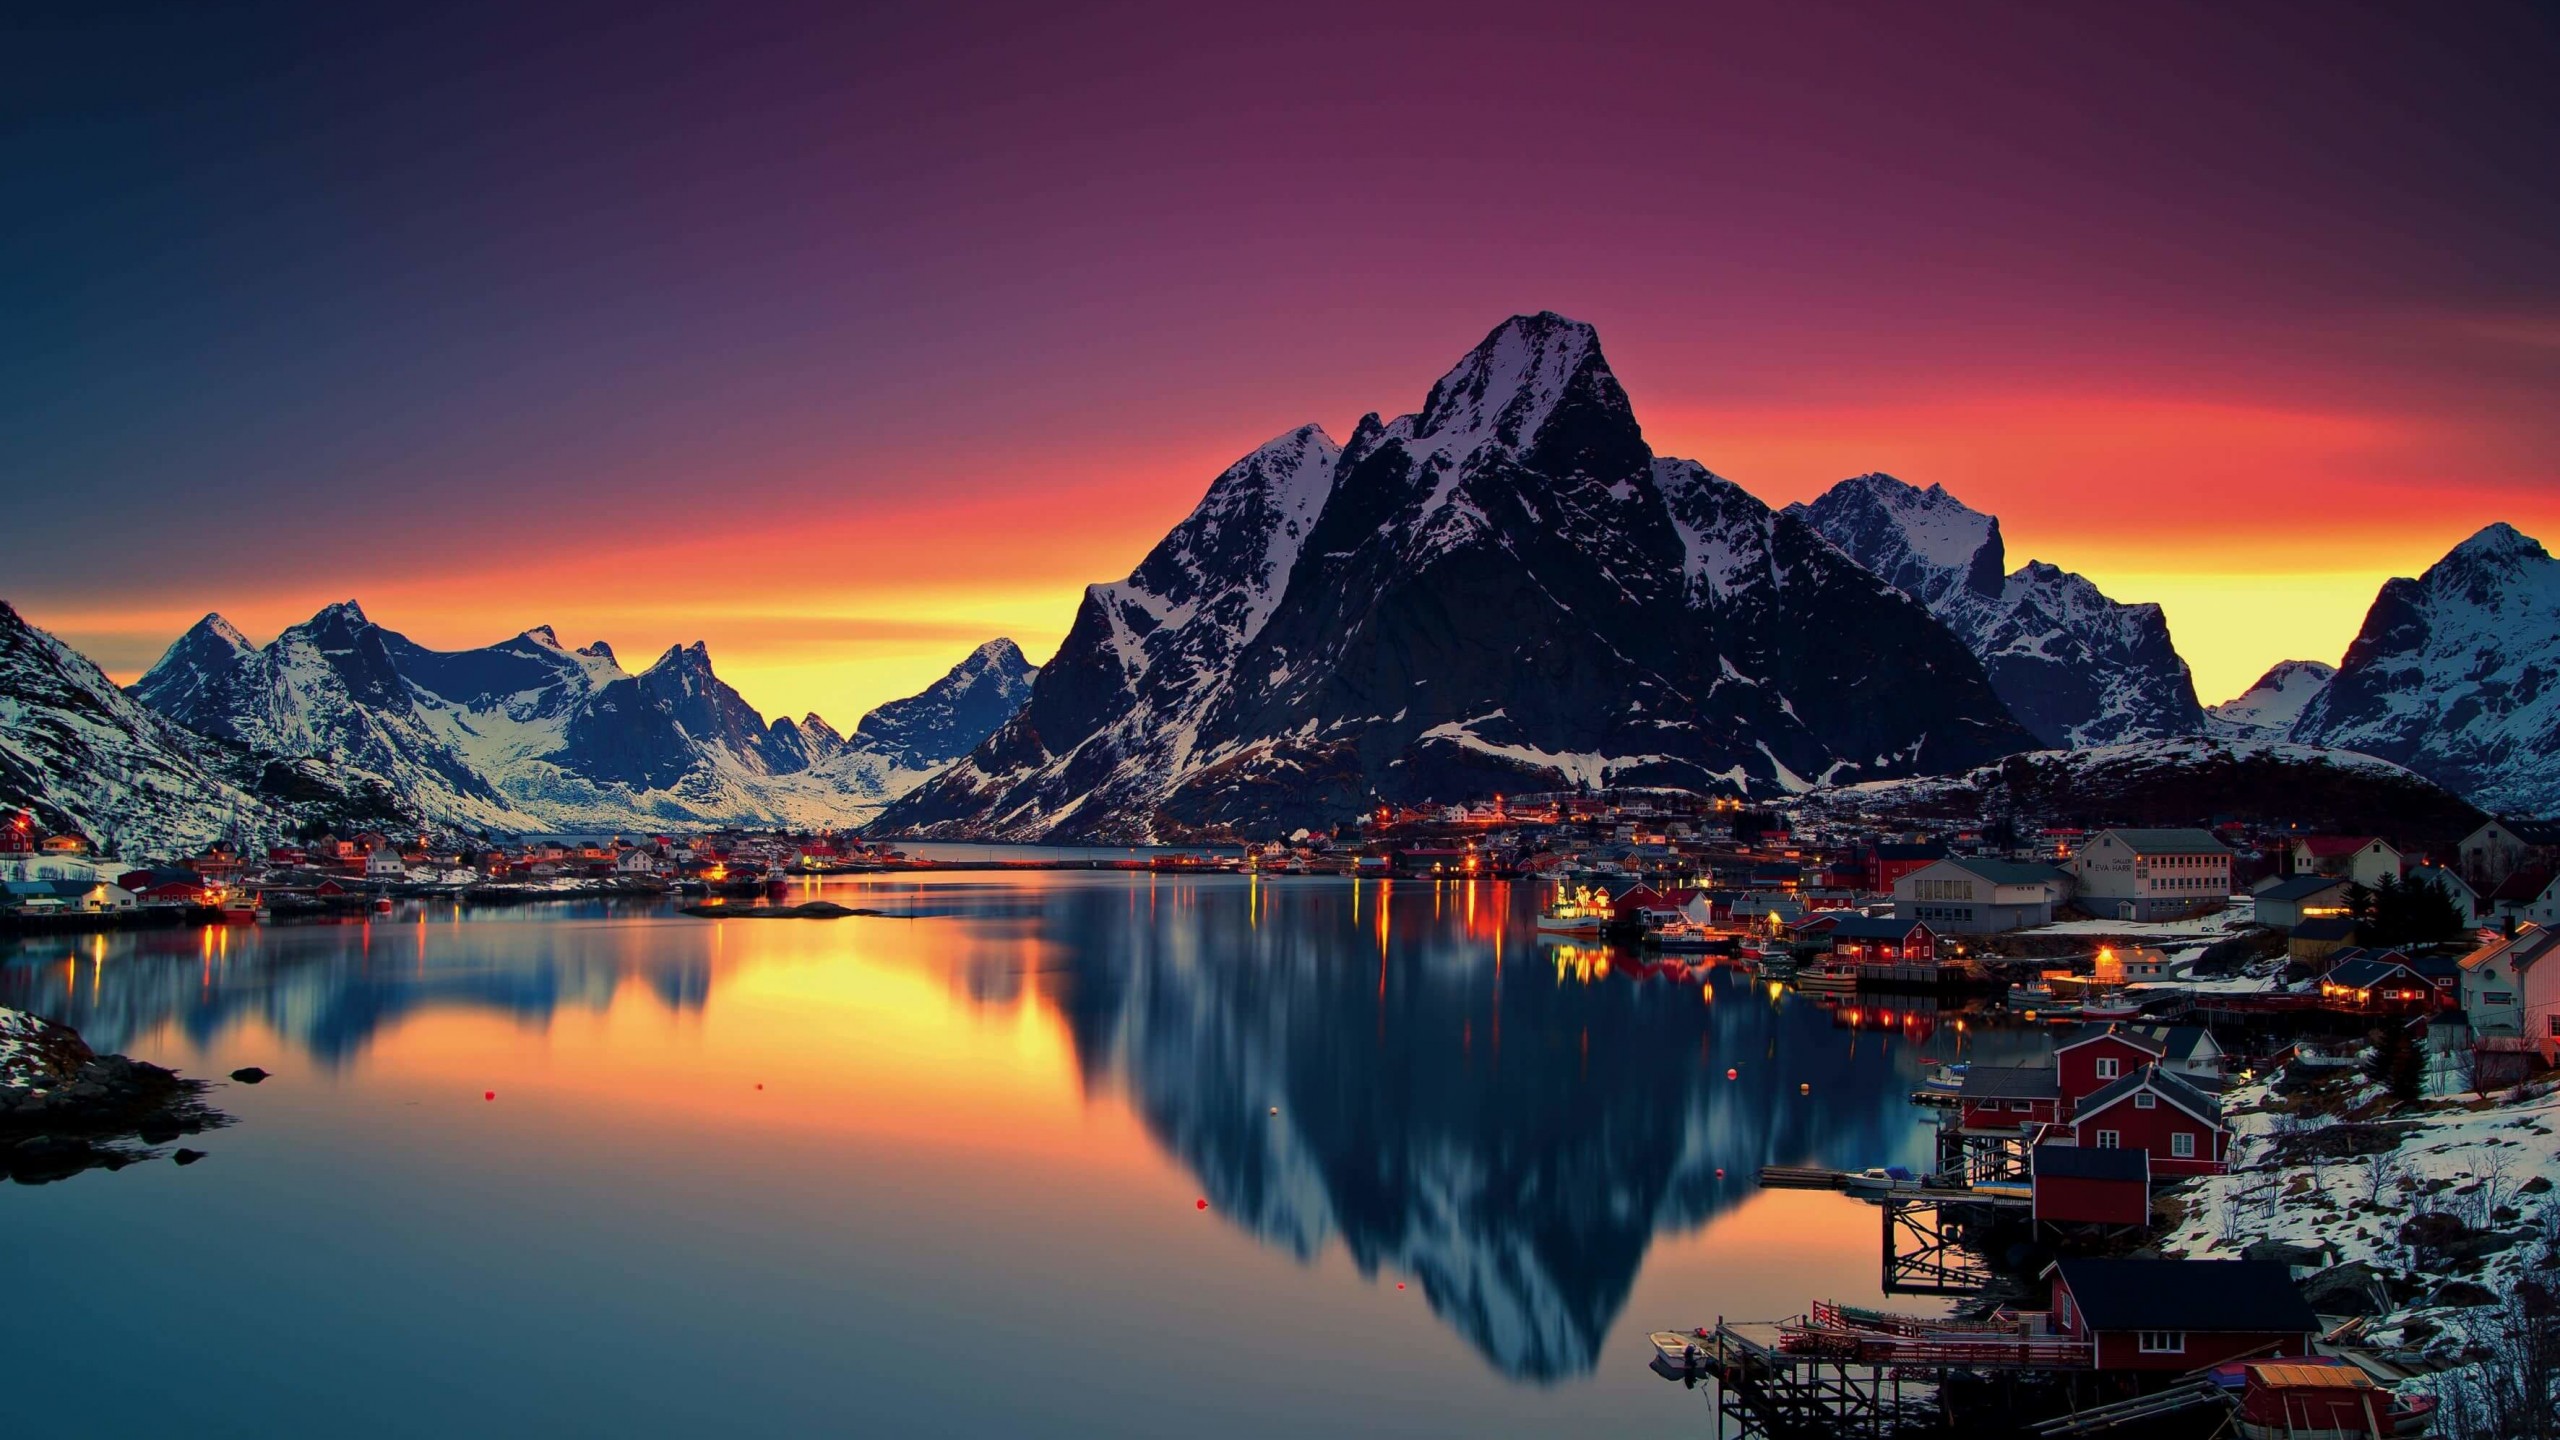 Lofoten Islands, Norway Wallpaper for Desktop 2560x1440